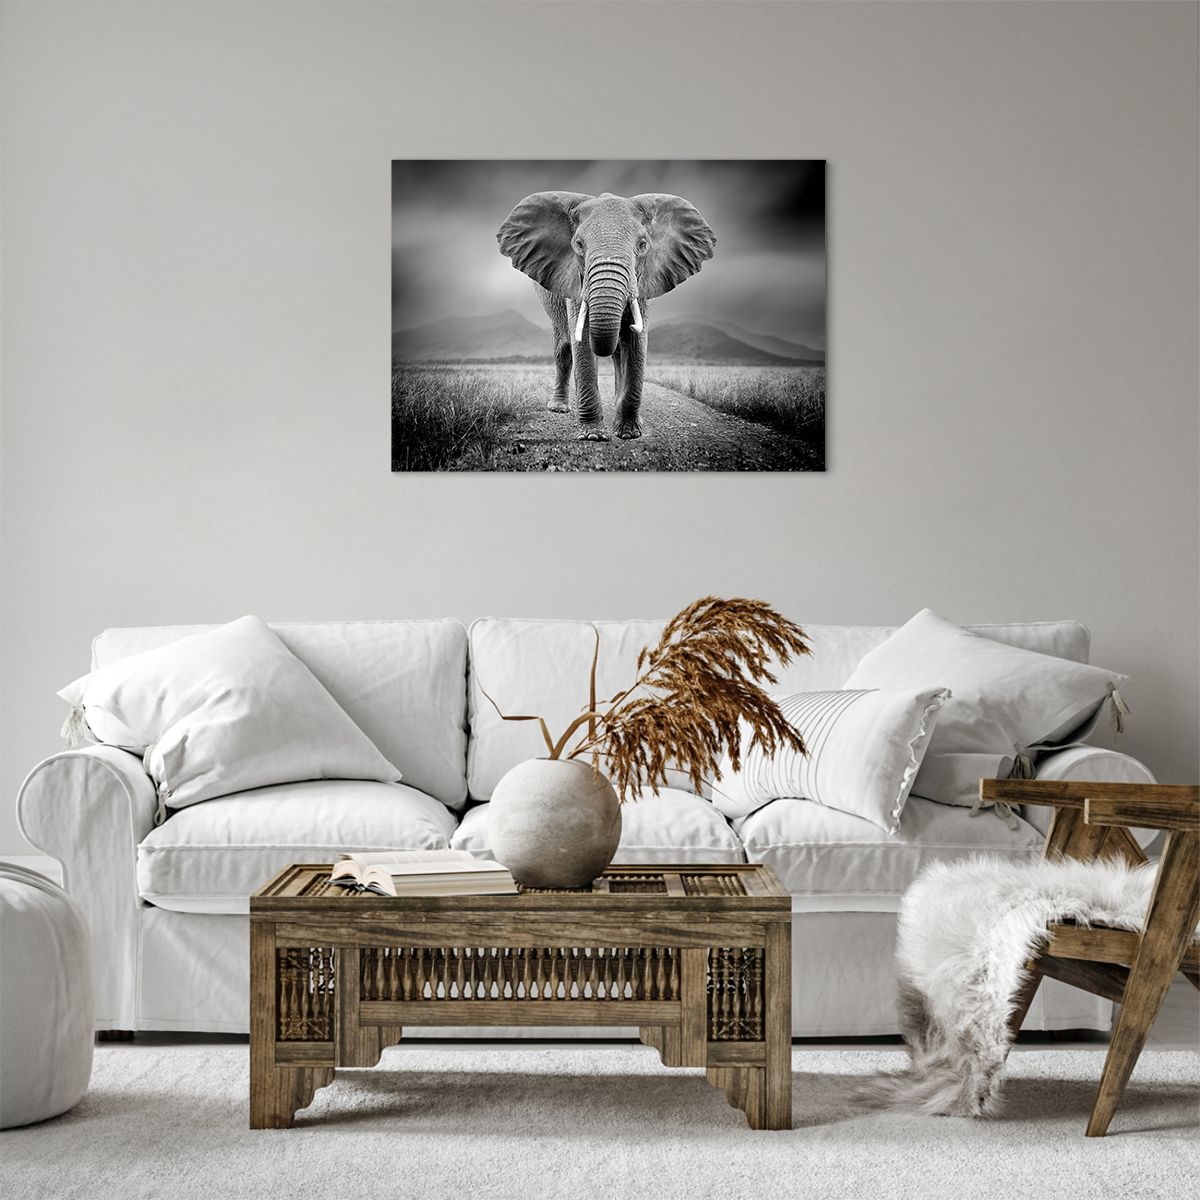 Impression sur toile Éléphant, Impression sur toile Animaux, Impression sur toile Paysage, Impression sur toile La Nature, Impression sur toile Afrique